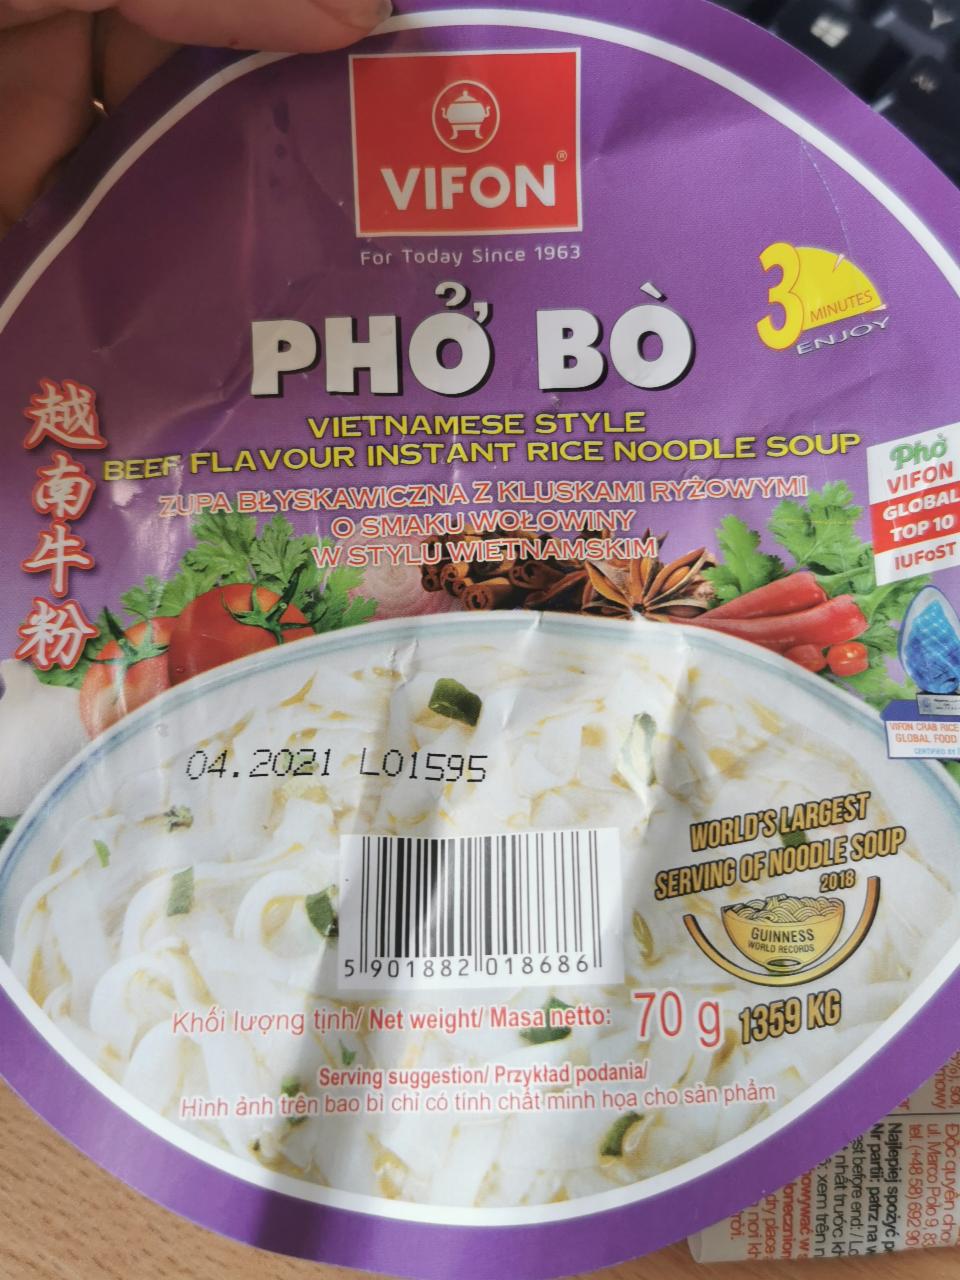 Zdjęcia - Vifon Pho Bo Zupa błyskawiczna z kluskami ryżowymi o smaku wołowiny w stylu wietnamskim 70 g